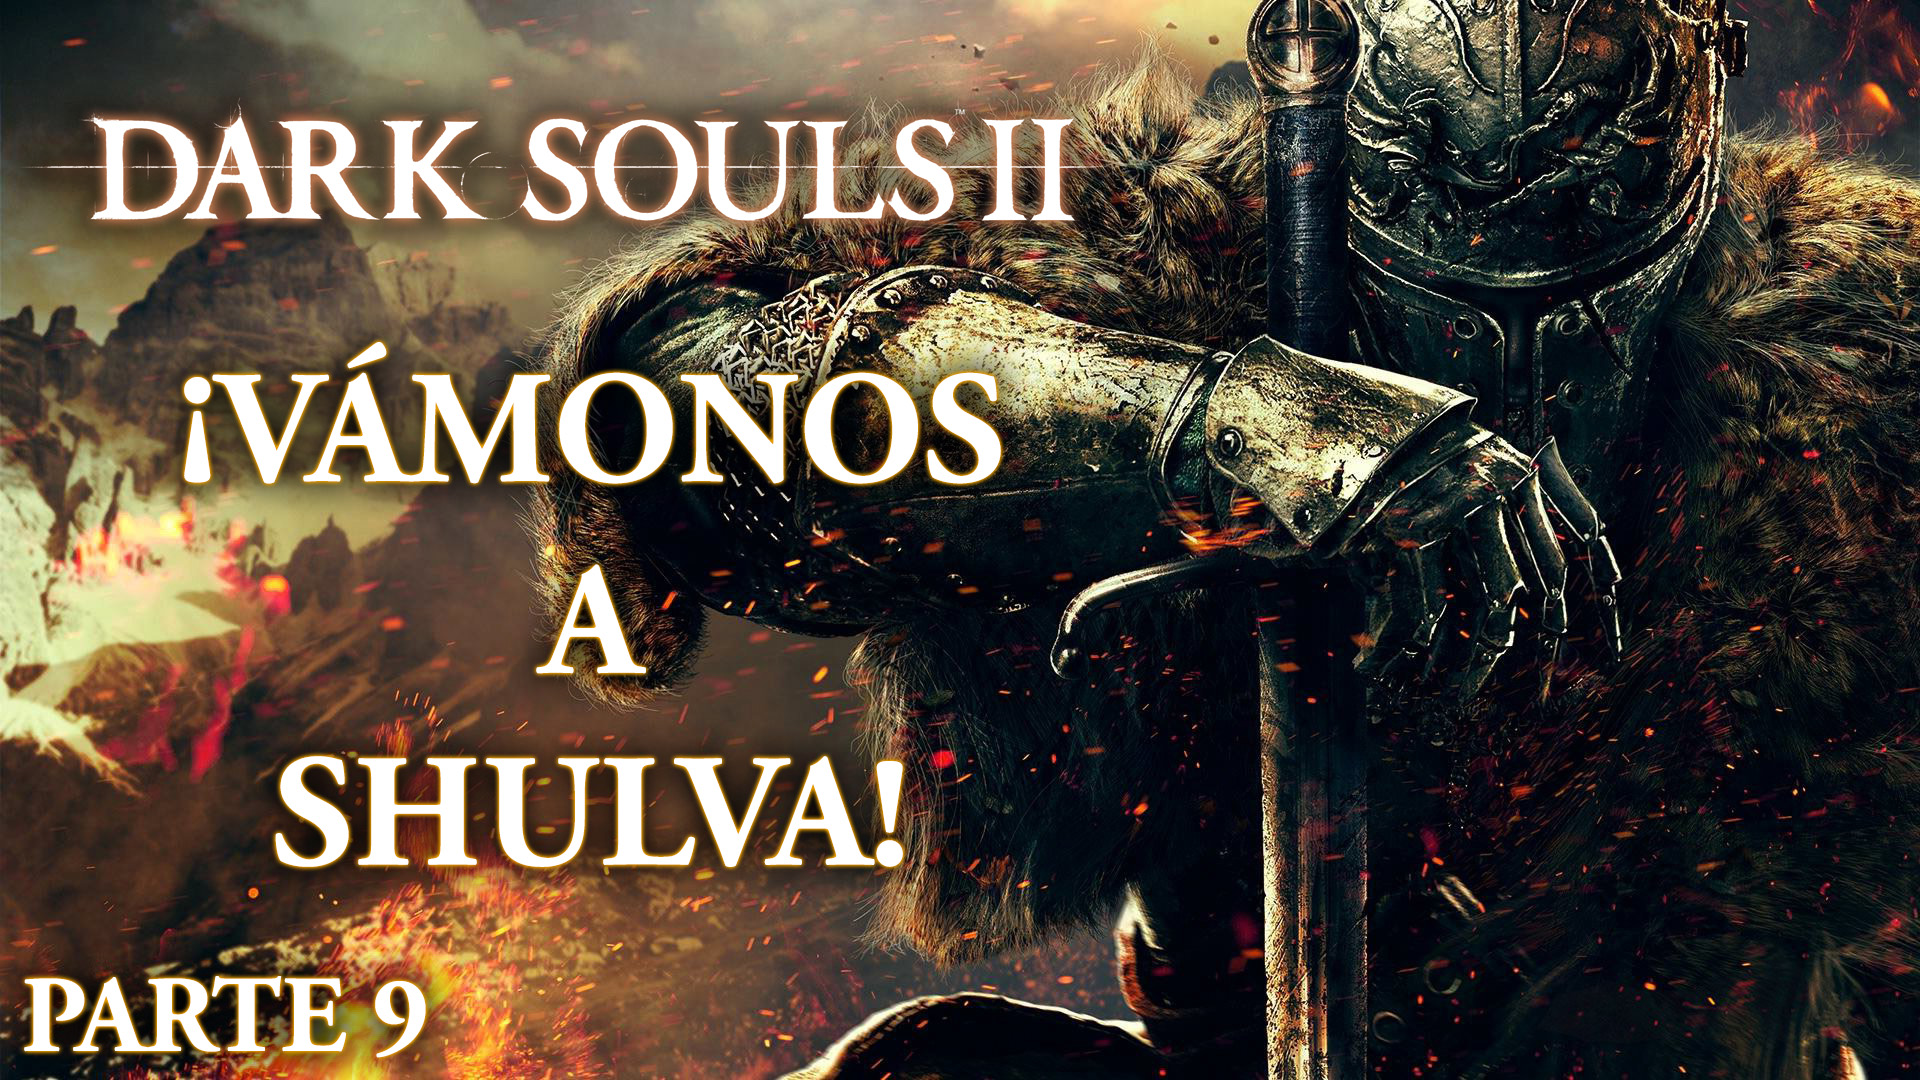 Serie Dark Souls II Parte 9: ¡Vámonos a Shulva!